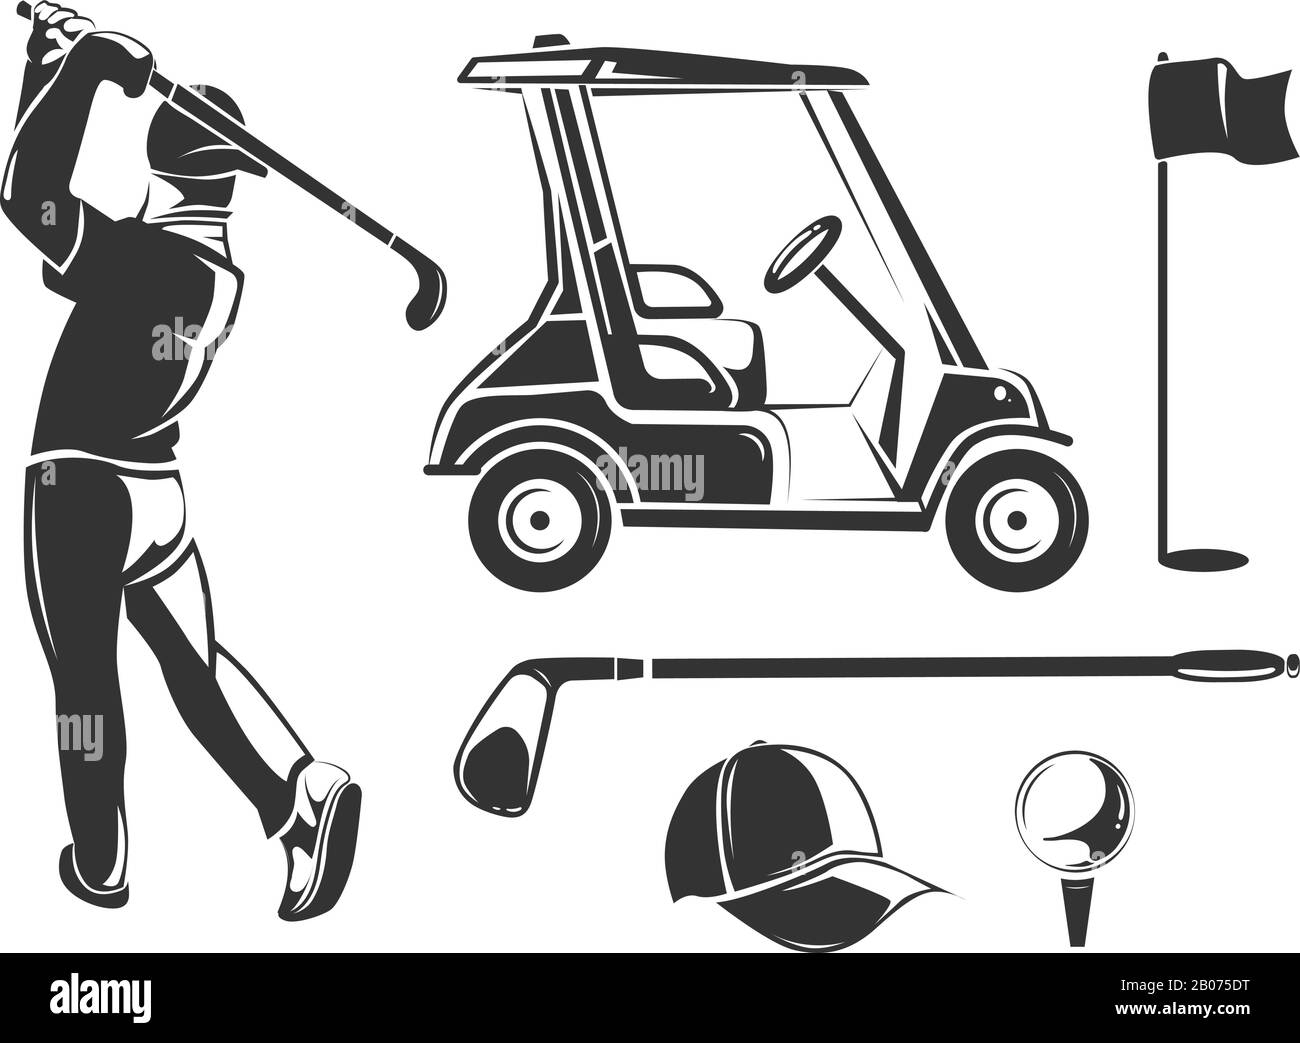 Elementi vettoriali per golf vintage per etichette, emblemi, badge e loghi. Lettore e accessori per l'illustrazione dei giochi Illustrazione Vettoriale